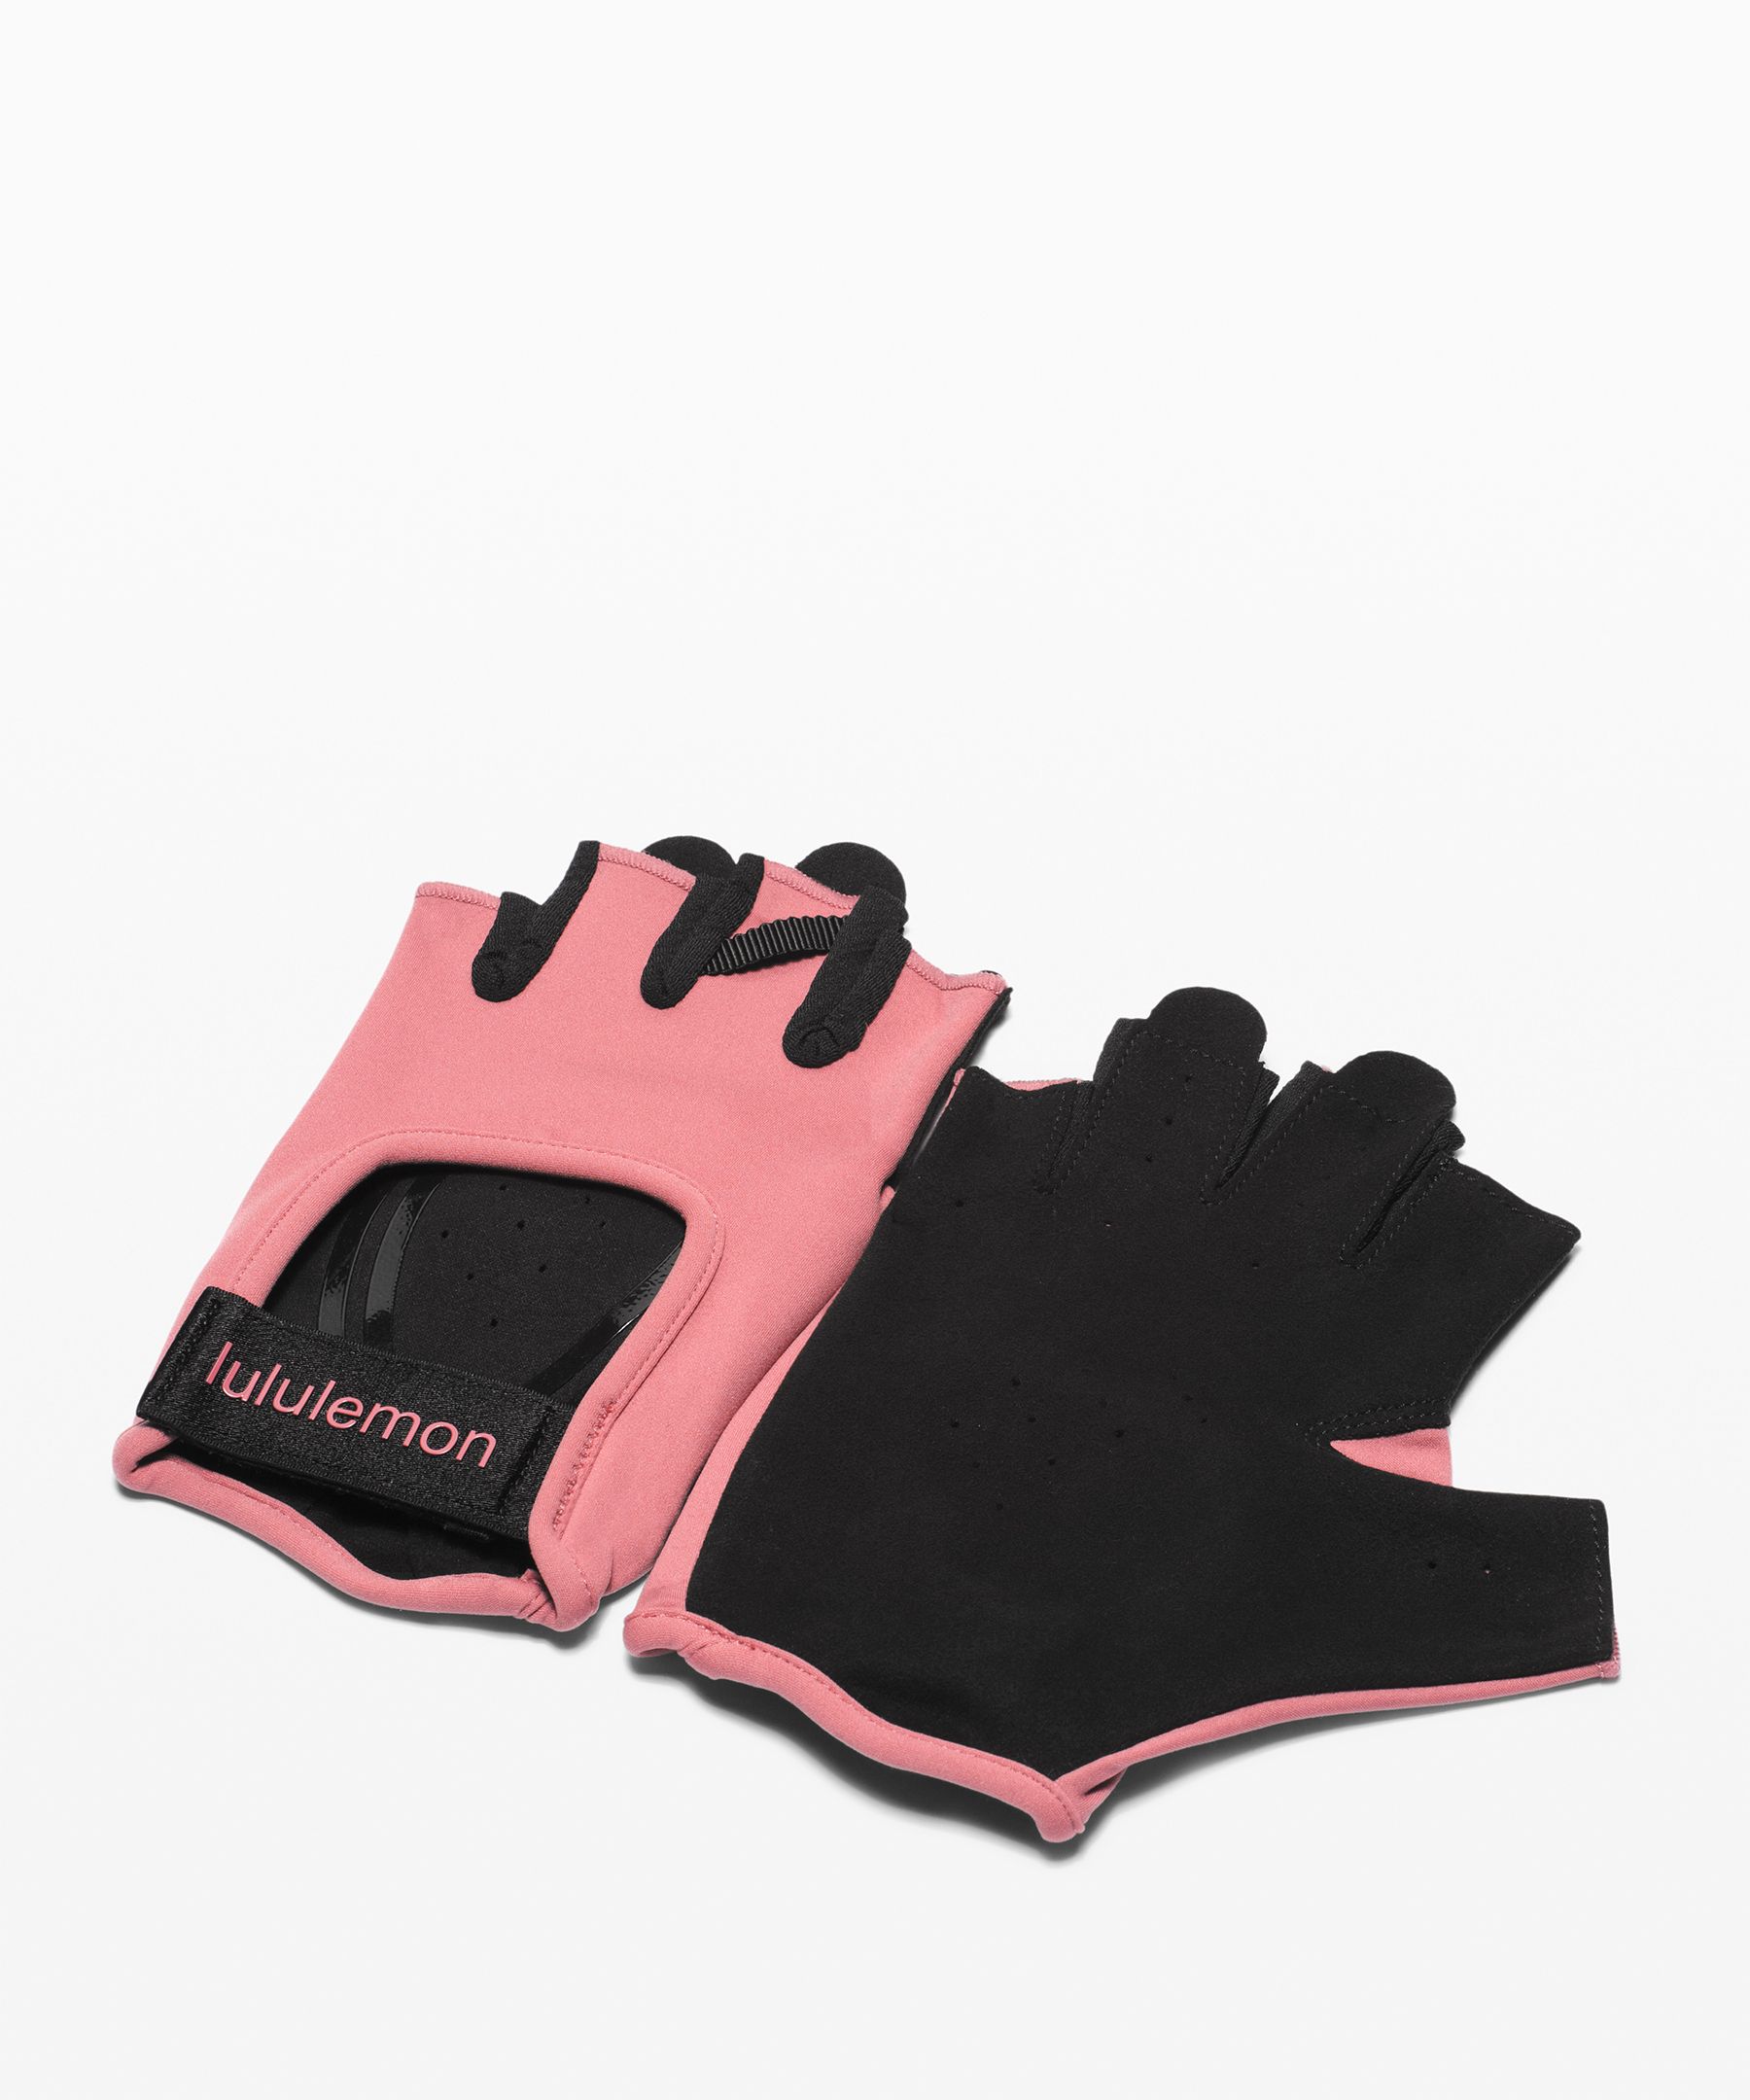 Uplift Training Gloves | Women's 